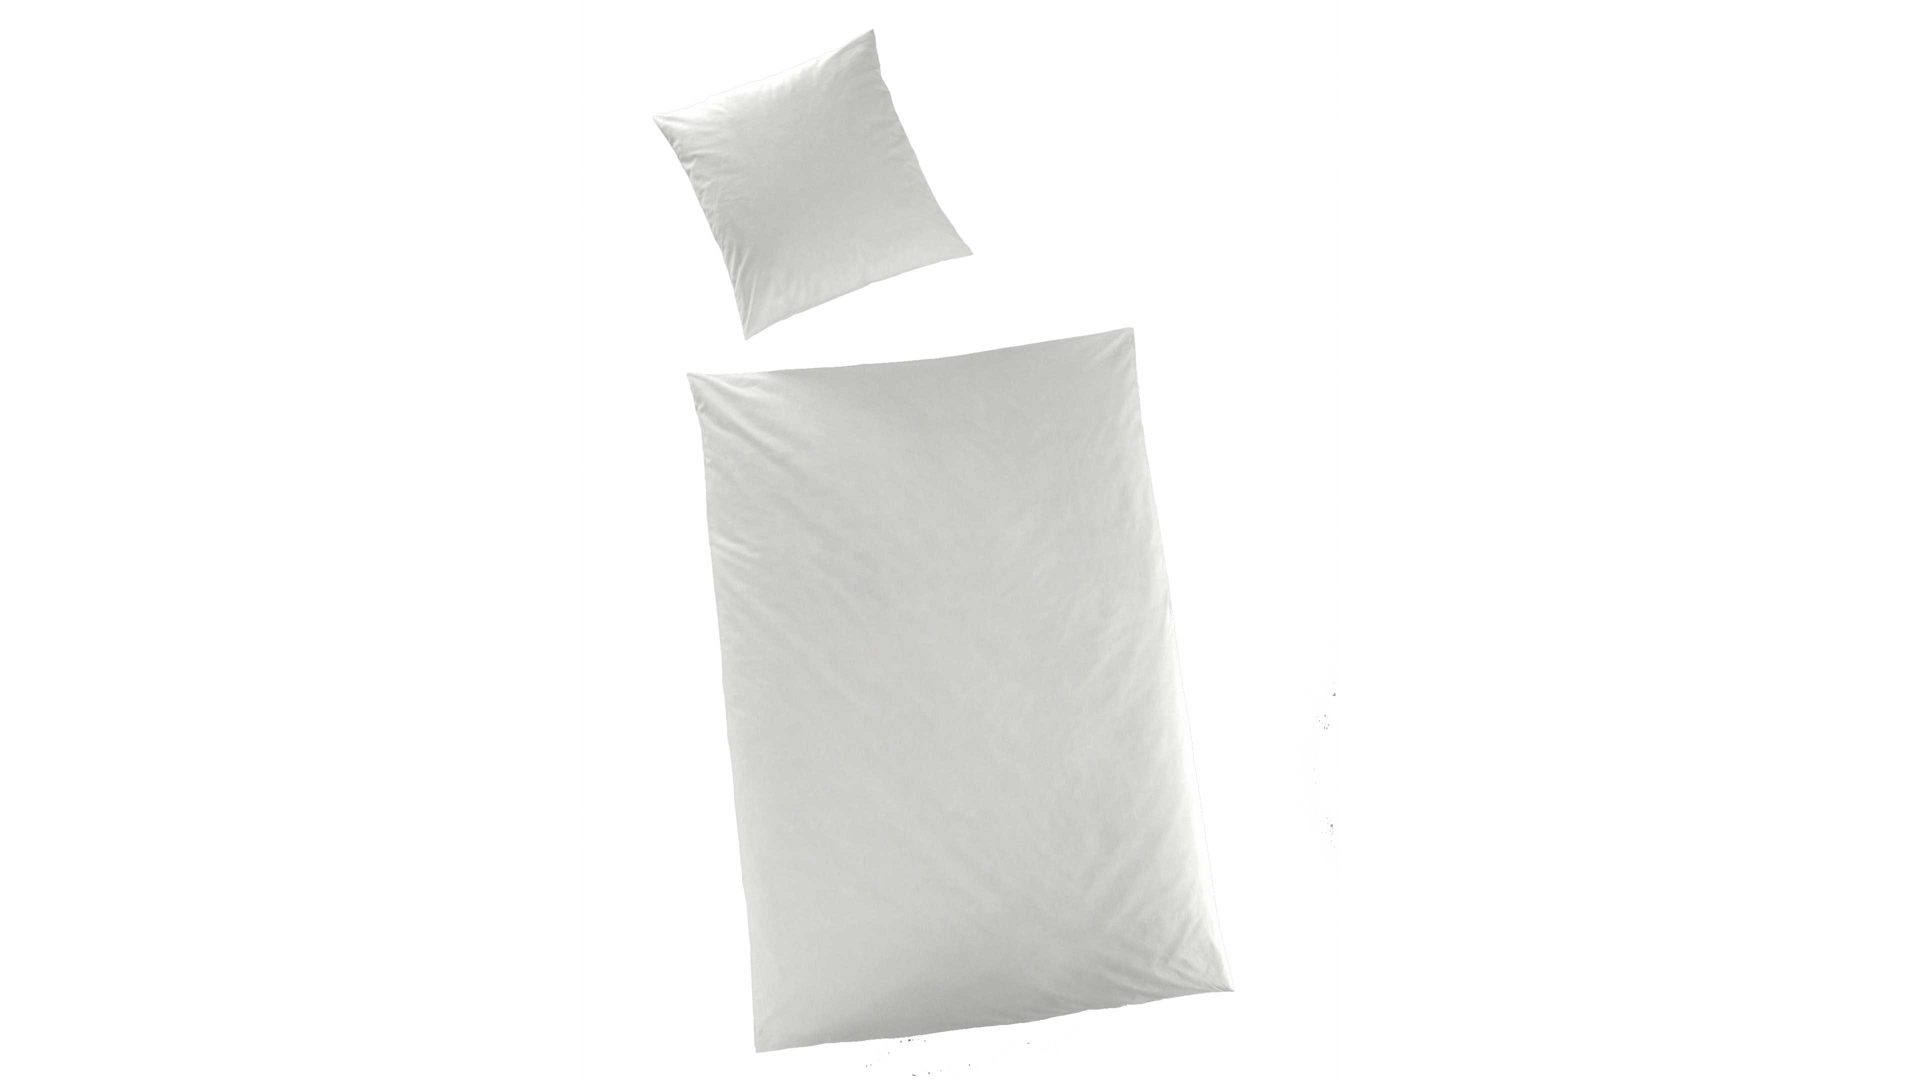 Bettwäsche-Set H.g. hahn haustextilien aus Stoff in Weiß HAHN Luxus Satin-Bettwäsche Sempre weißer Baumwollsatin - zweiteilig, ca. 135 x 200 cm